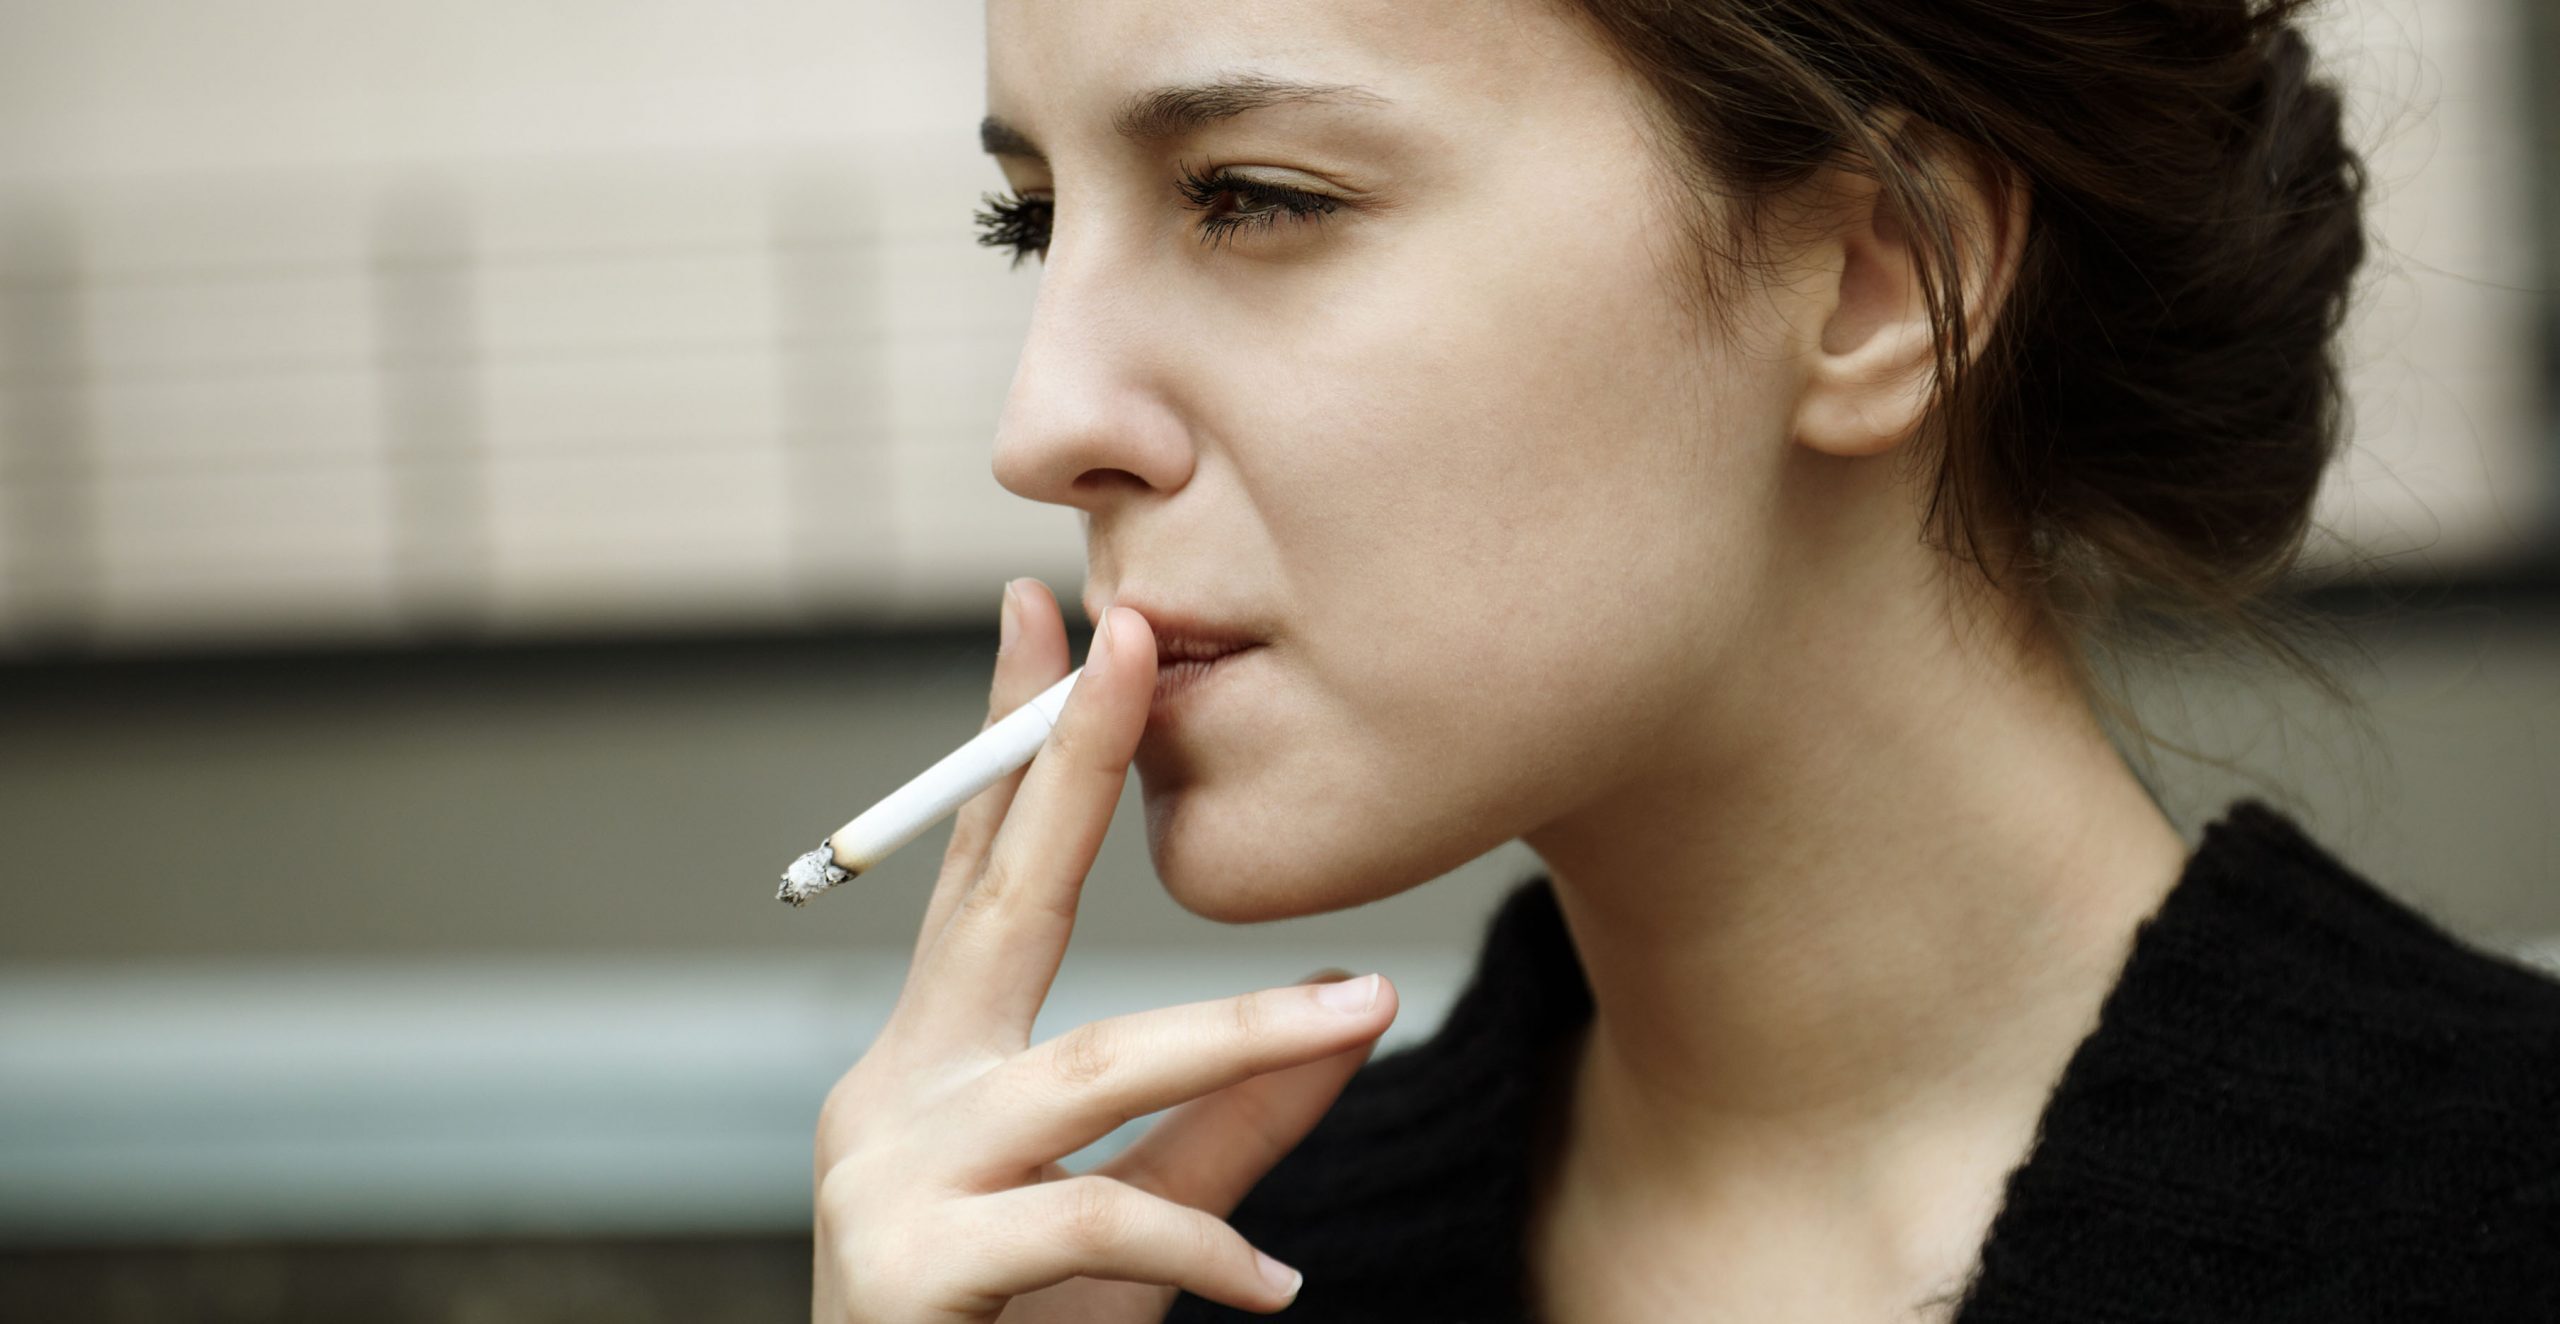 کدام کشور بیشترین سیگاری های جهان را دارد؟ مردان بیشتر سیگار می کشند یا زنان؟